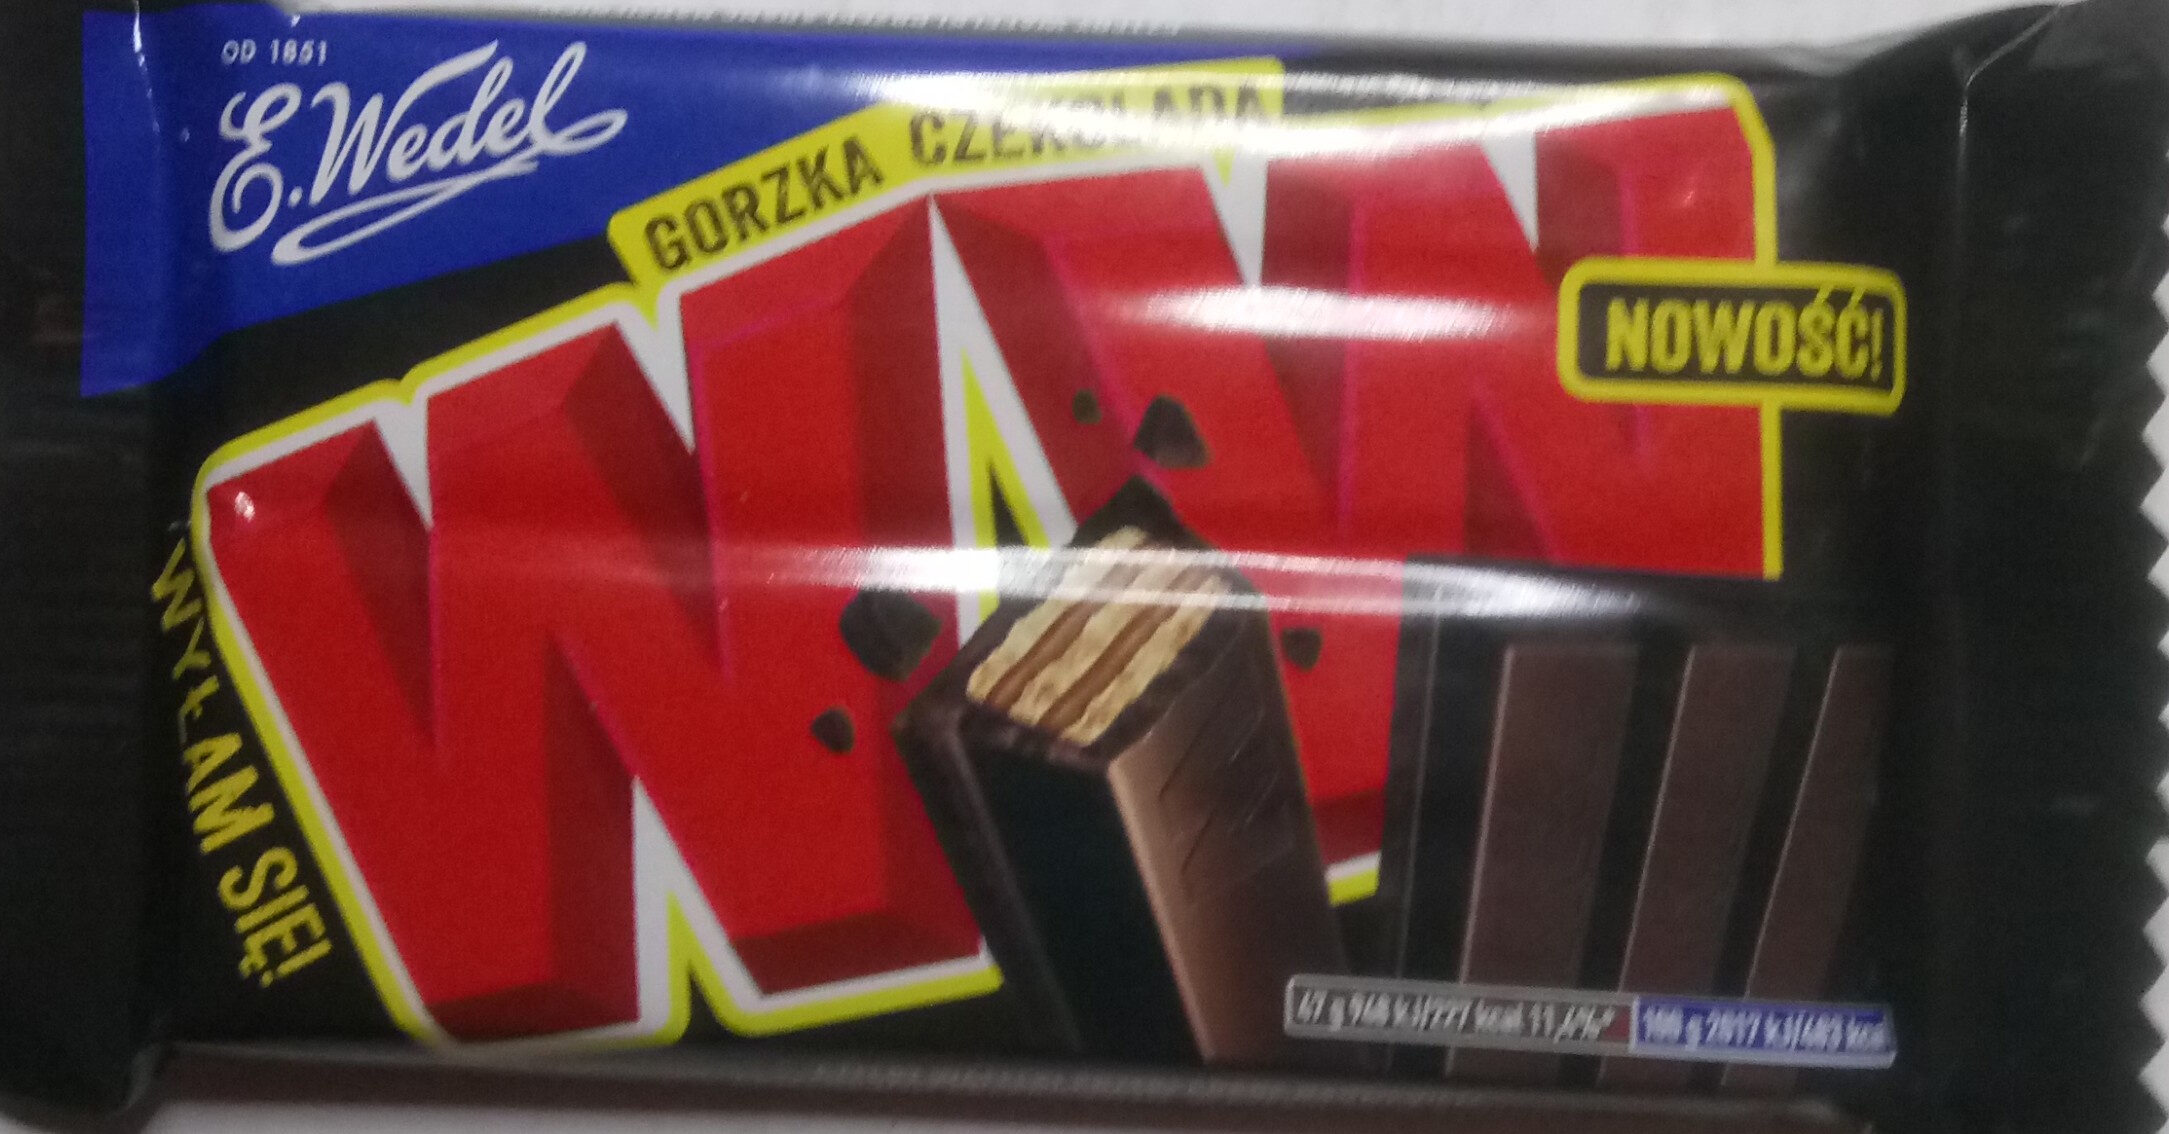 WW gorzka czekolada - Product - pl